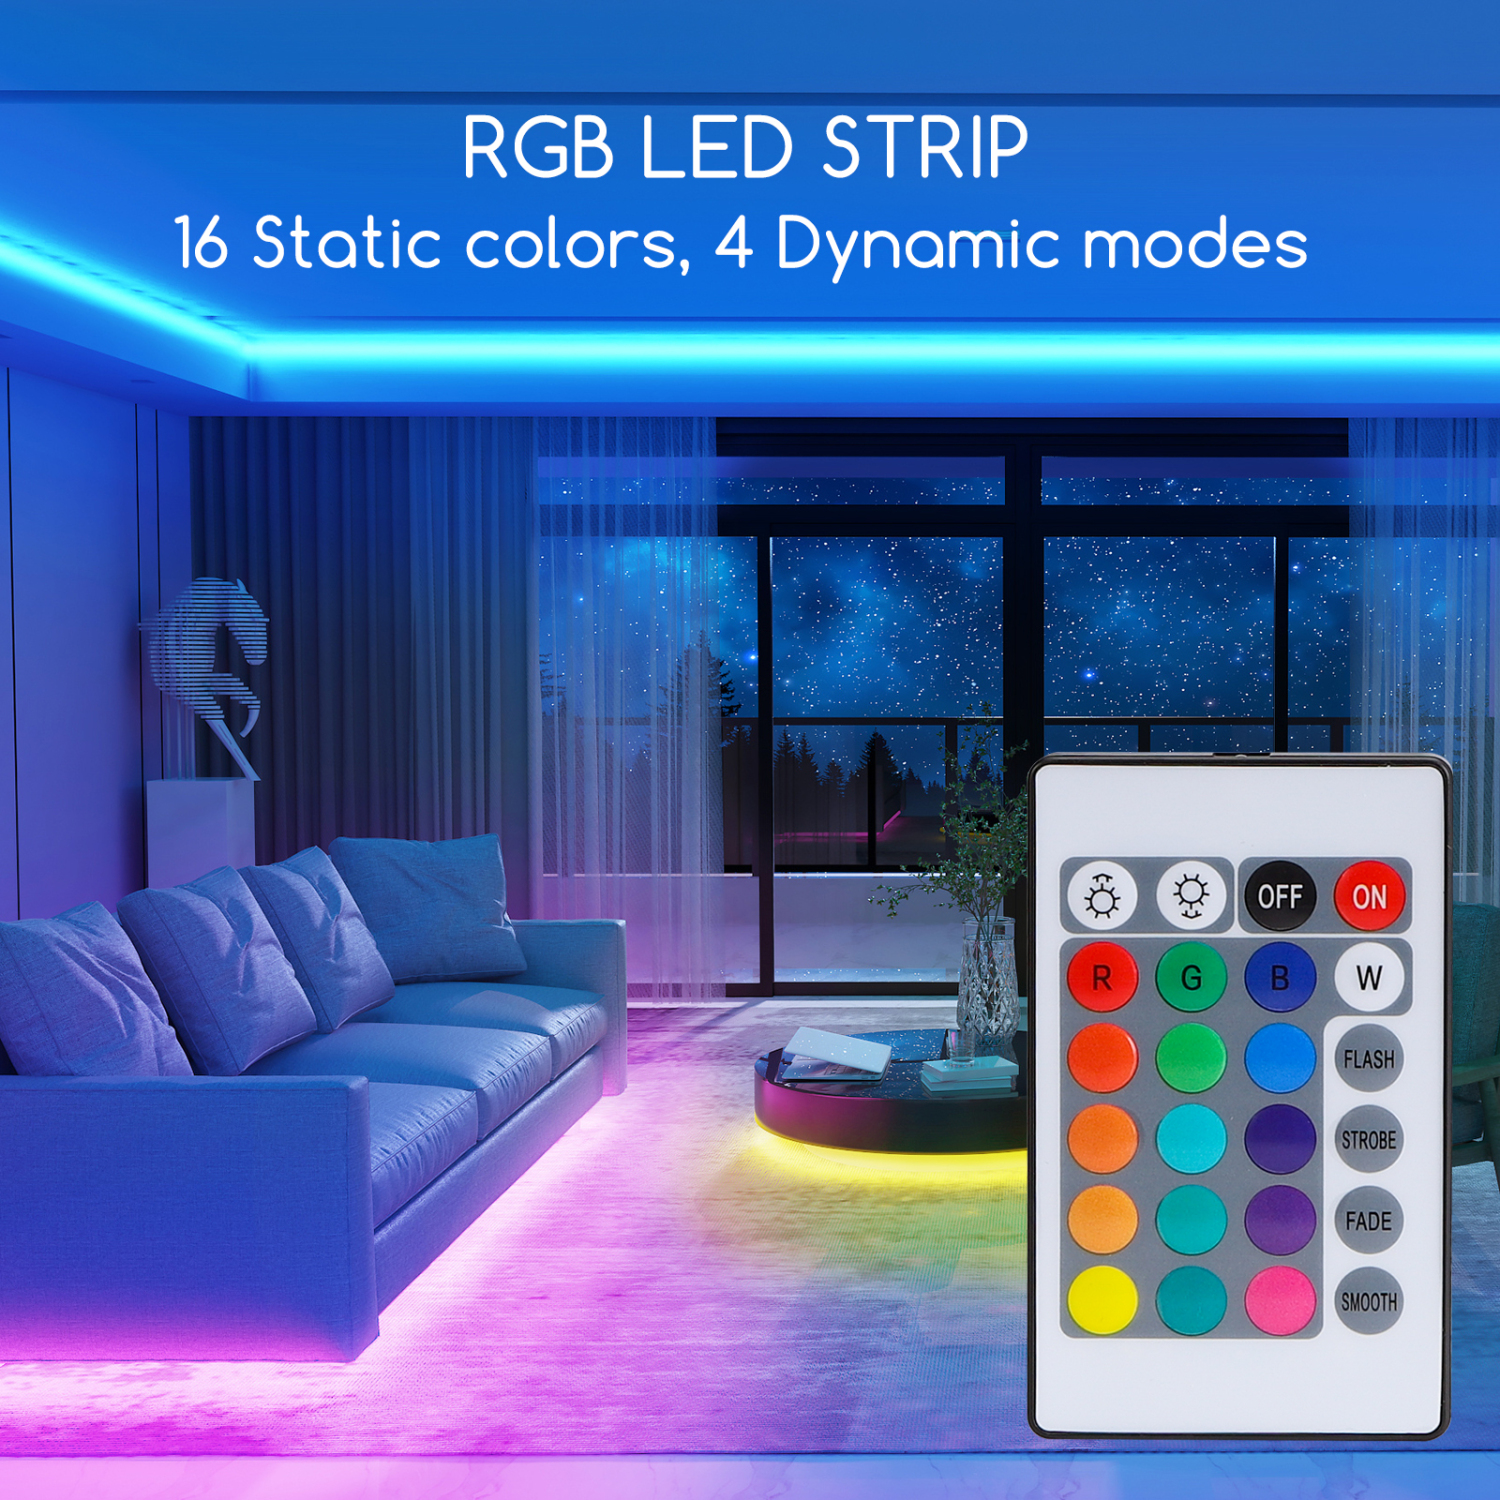 Aigostar LED Strip 3M, RGB LED Strip met Afstandsbediening, IP65 Waterdichte, LED Strip Light voor Thuis, TV, Slaapkamer, Keuken, Party, Veranda, Feest, Bar [Energieklasse A]